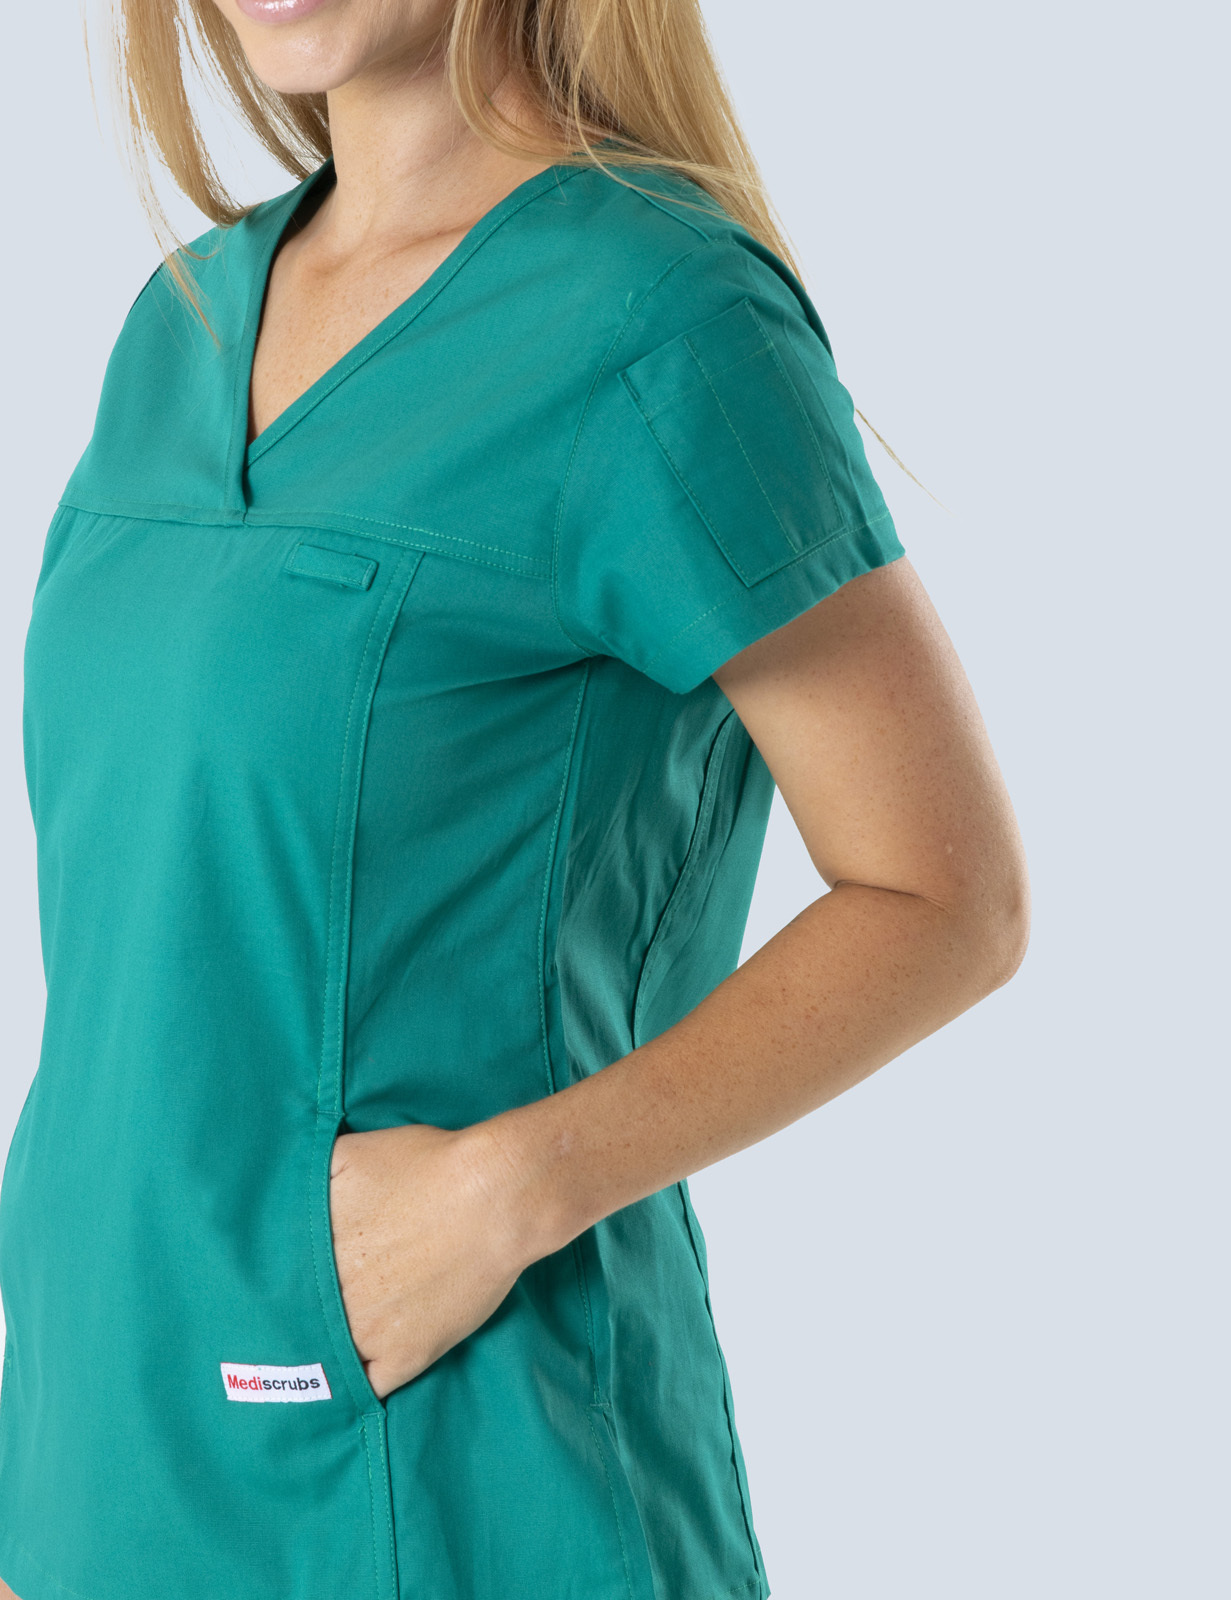 Queensland Children's Hospital Emergency Department Assistant in Nursing  Uniform Top Bundle  (Women's Fit Top in Hunter incl Logos)